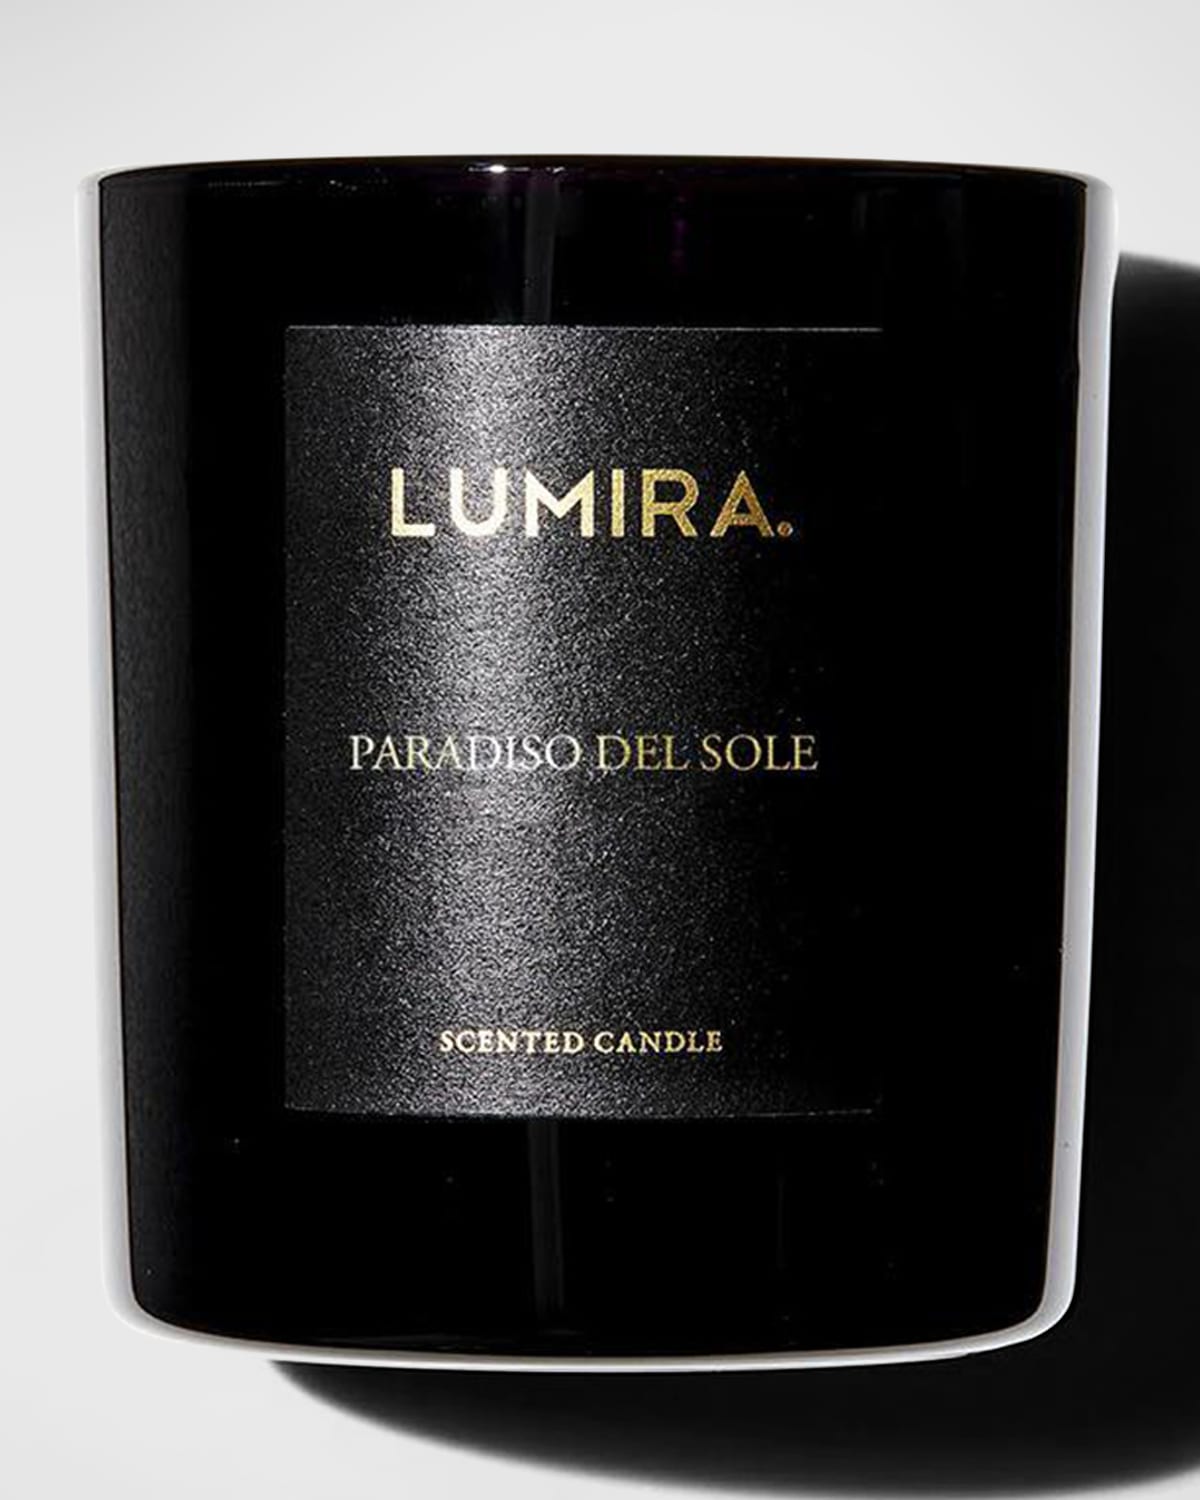 LUMIRA PARADISO DEL SOLE CANDLE, 10.5 OZ.